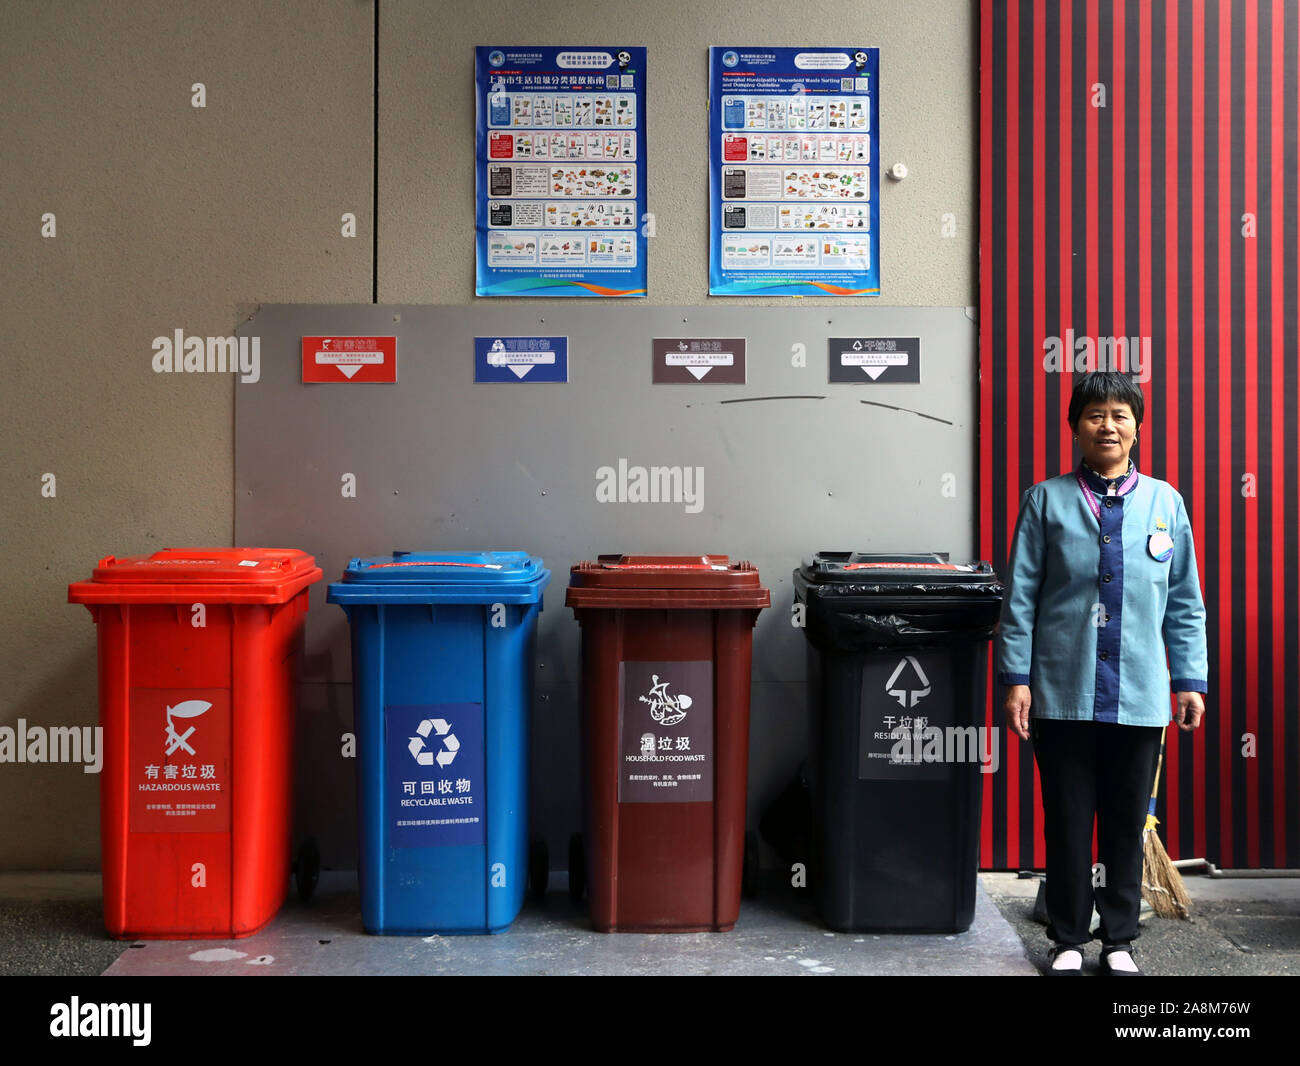 Shanghai, China. 9 Nov, 2019. Jiang Huiling, einen Bediensteten, der für die Erhaltung der Mülltonnen verantwortlich ist, steht an einem Müll sortieren Seite während des zweiten China Import Interntaional Expo (CIIE) in Shanghai, China, November 9, 2019. Fast 4.000 240-Liter Mülleimer wurden für das zweite Ciie der Expo mehr Umweltfreundliche nach Shanghai einen Satz von Vorschriften für Hausmüll Sortierung und Recycling am 1. Juli angenommen hat. Credit: Liu Ying/Xinhua/Alamy leben Nachrichten Stockfoto